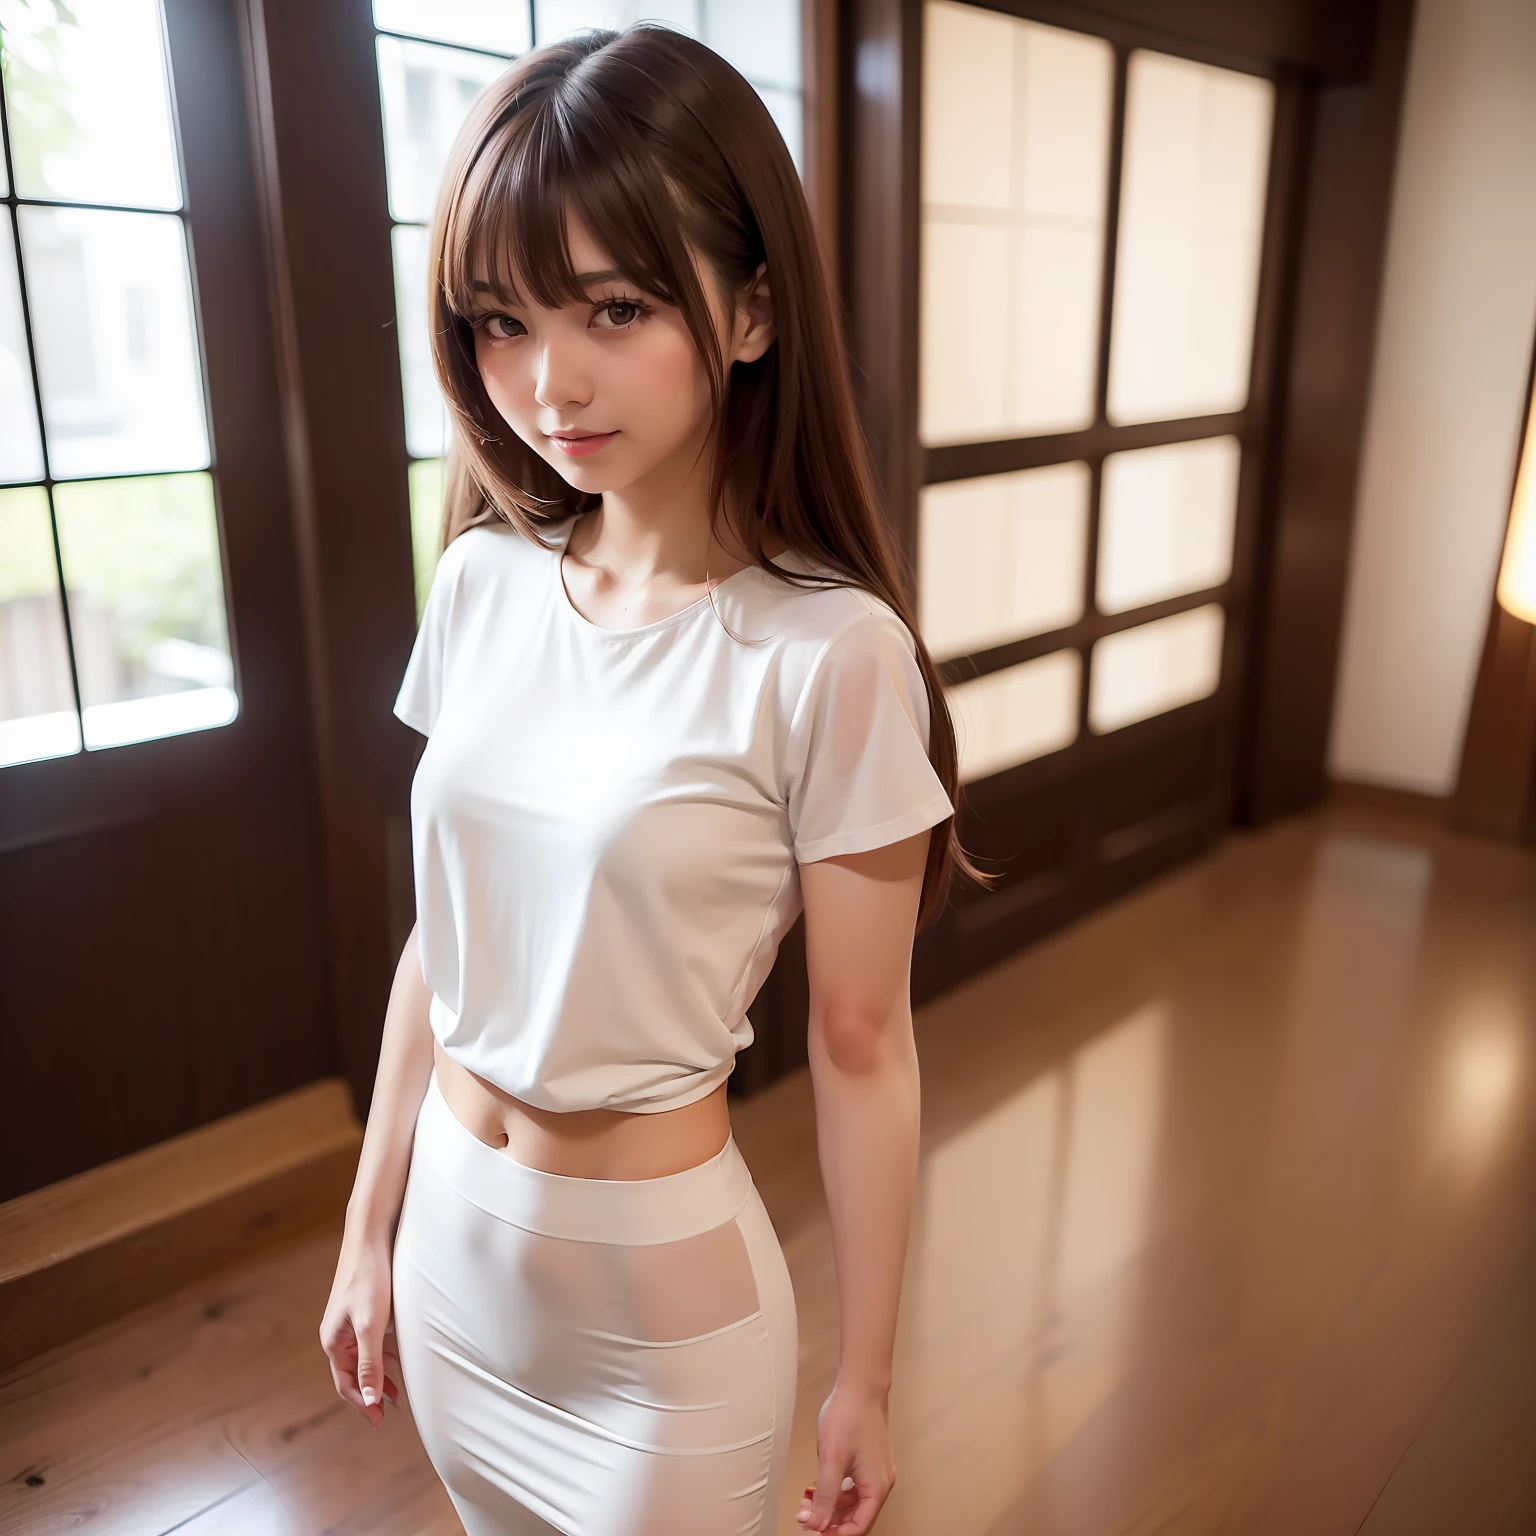 ((최고의 품질, 8K, 테이블 탑: 1.3)), 전신, (최고의 품질, 테이블 탑: 1.2)), 귀여운 일본 여성의 사진, 소녀 1명, 25세의 아름다운 일본 소녀, ((가슴이 열린 흰색 티셔츠: 8.5)), (전신 사진 촬영), 전신 portrait, 딱딱한 , 매우 섬세한 몸, 작은 breasts, ((얇은 허리: 5.5)), (날씬한 복근: 3.5), (작은), (여성 160cm), 초점 선명화: 1.2, 뛰어난 뷰티 스타일: 1.4, 날씬한 복근: 1.2, (((갈색 머리, 큰: 1.2)), 매우 상세한 얼굴과 피부 질감, 상세한 눈, 쌍꺼풀, 미용실 내부，전신 portrait, 바람에 머리카락이 휘날린다, 가벼운 앞머리，미소，허리에 가위집이 있어요